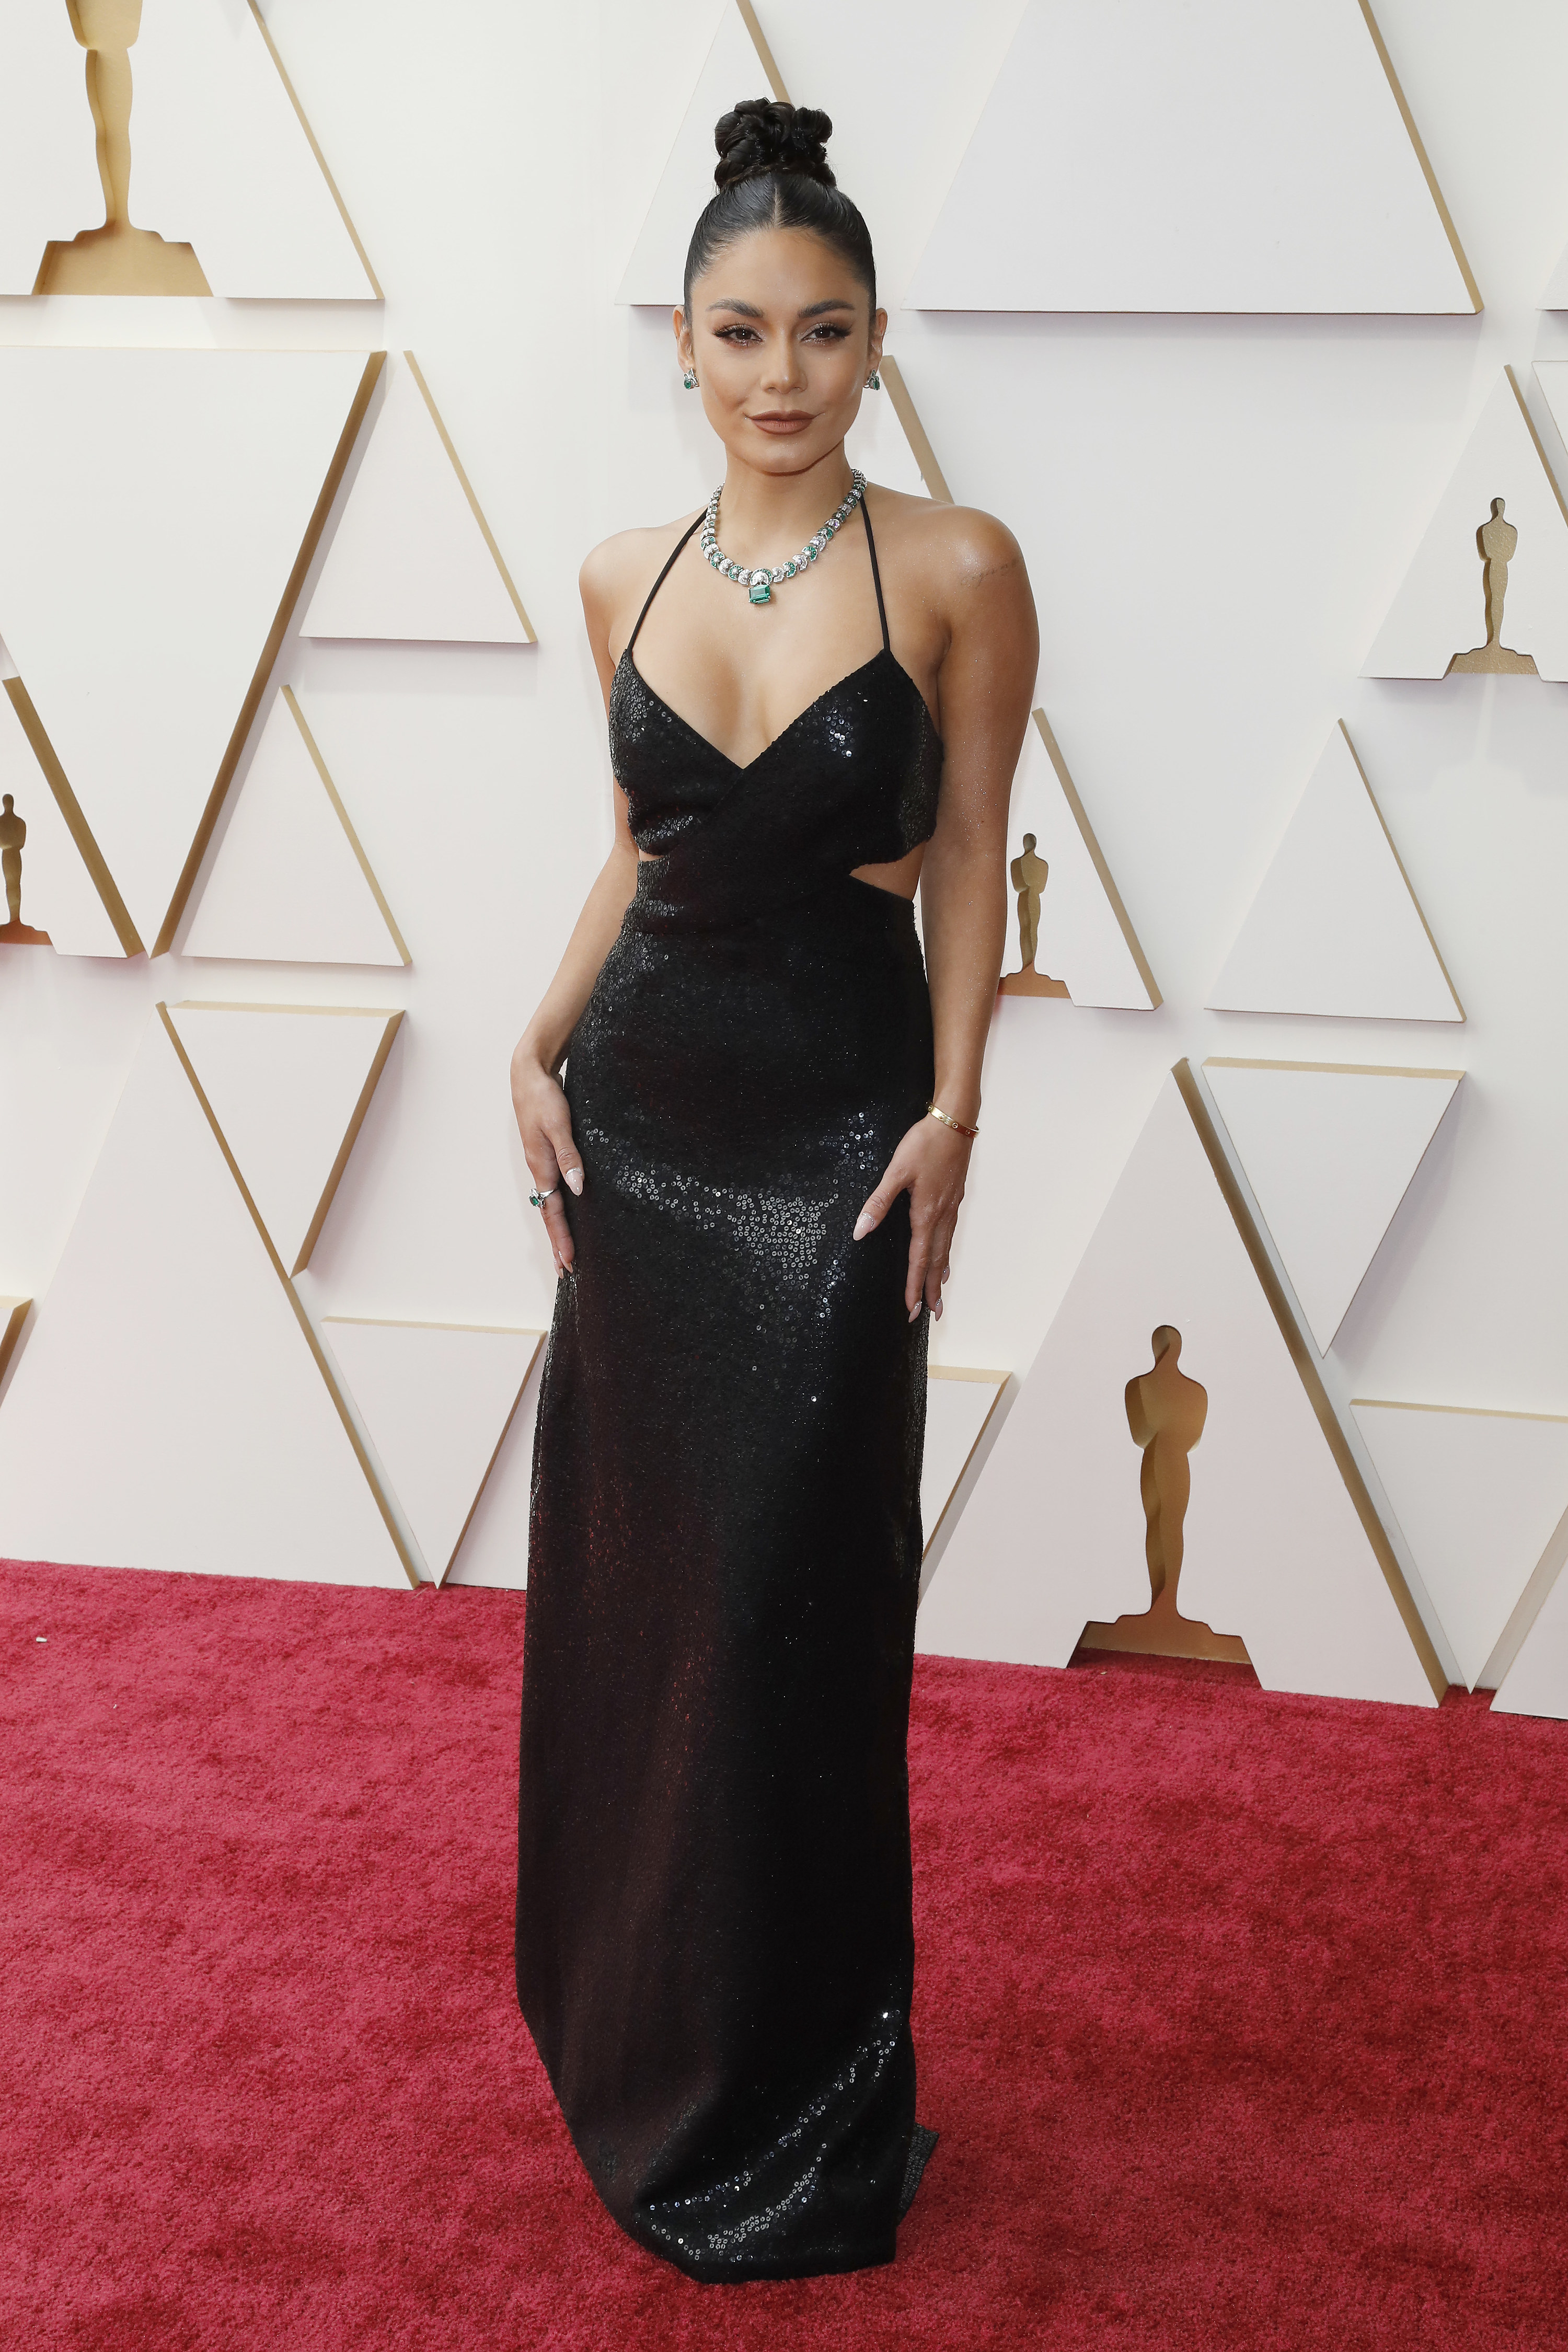 Vanessa Hudgens at the 2022 Oscars red carpet